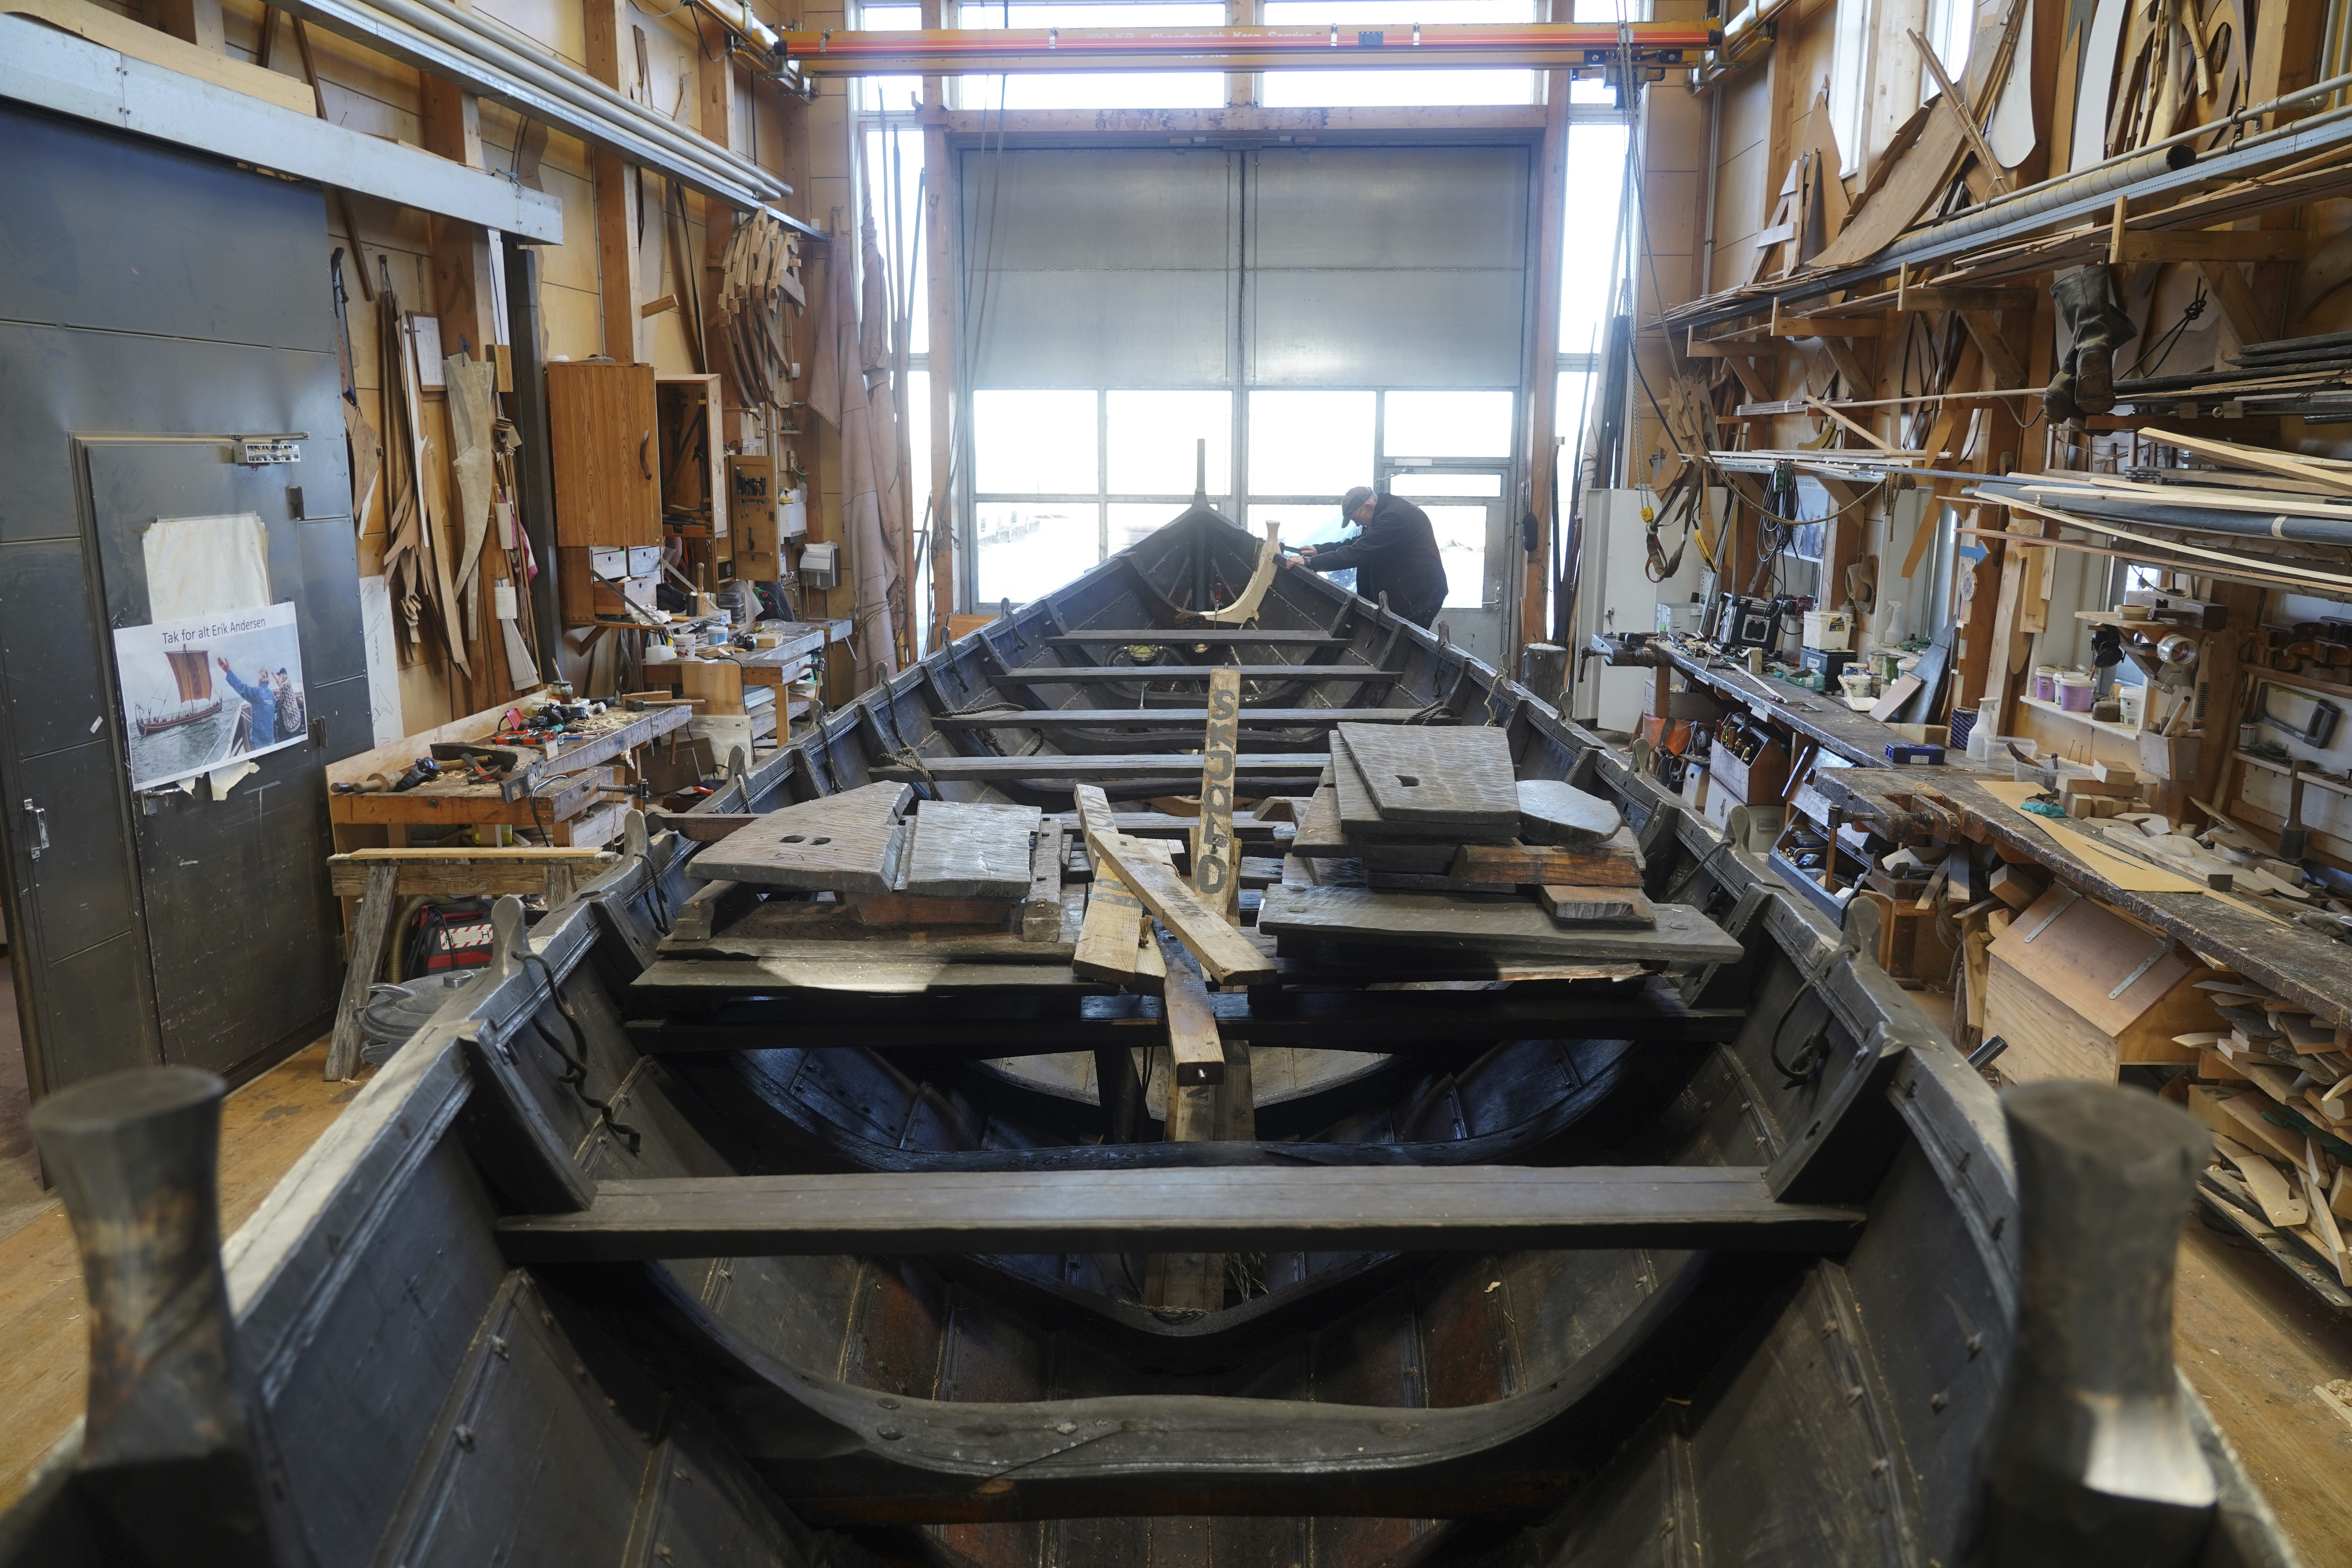 Un hombre repara un bote de remos de madera de 10 metros, construido según la tradición nórdica de los botes de escoria, en el astillero del Museo de Barcos Vikingos. Roskilde, Dinamarca, lunes 17 de enero de 2022.  (Foto AP/James Brooks)

